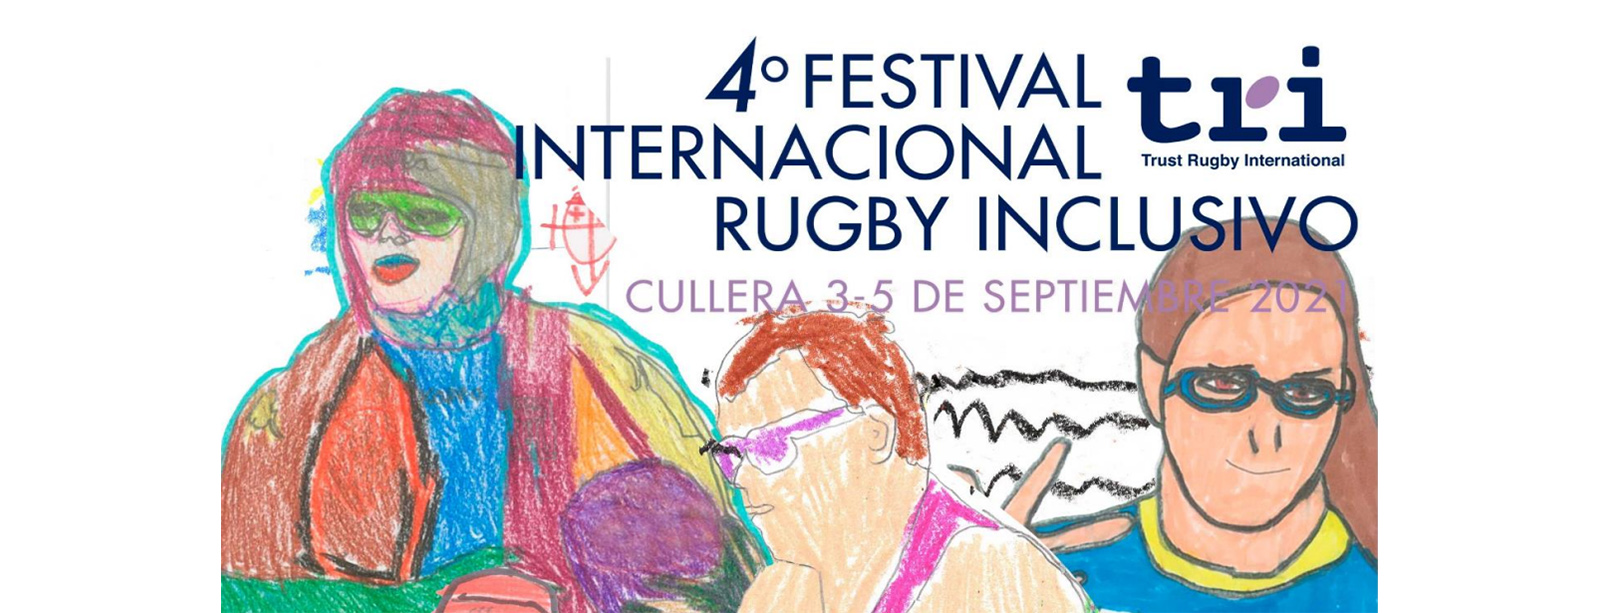 Los Hidalgos en el IV Festival Internacional de Rugby Inclusivo Cullera 2021